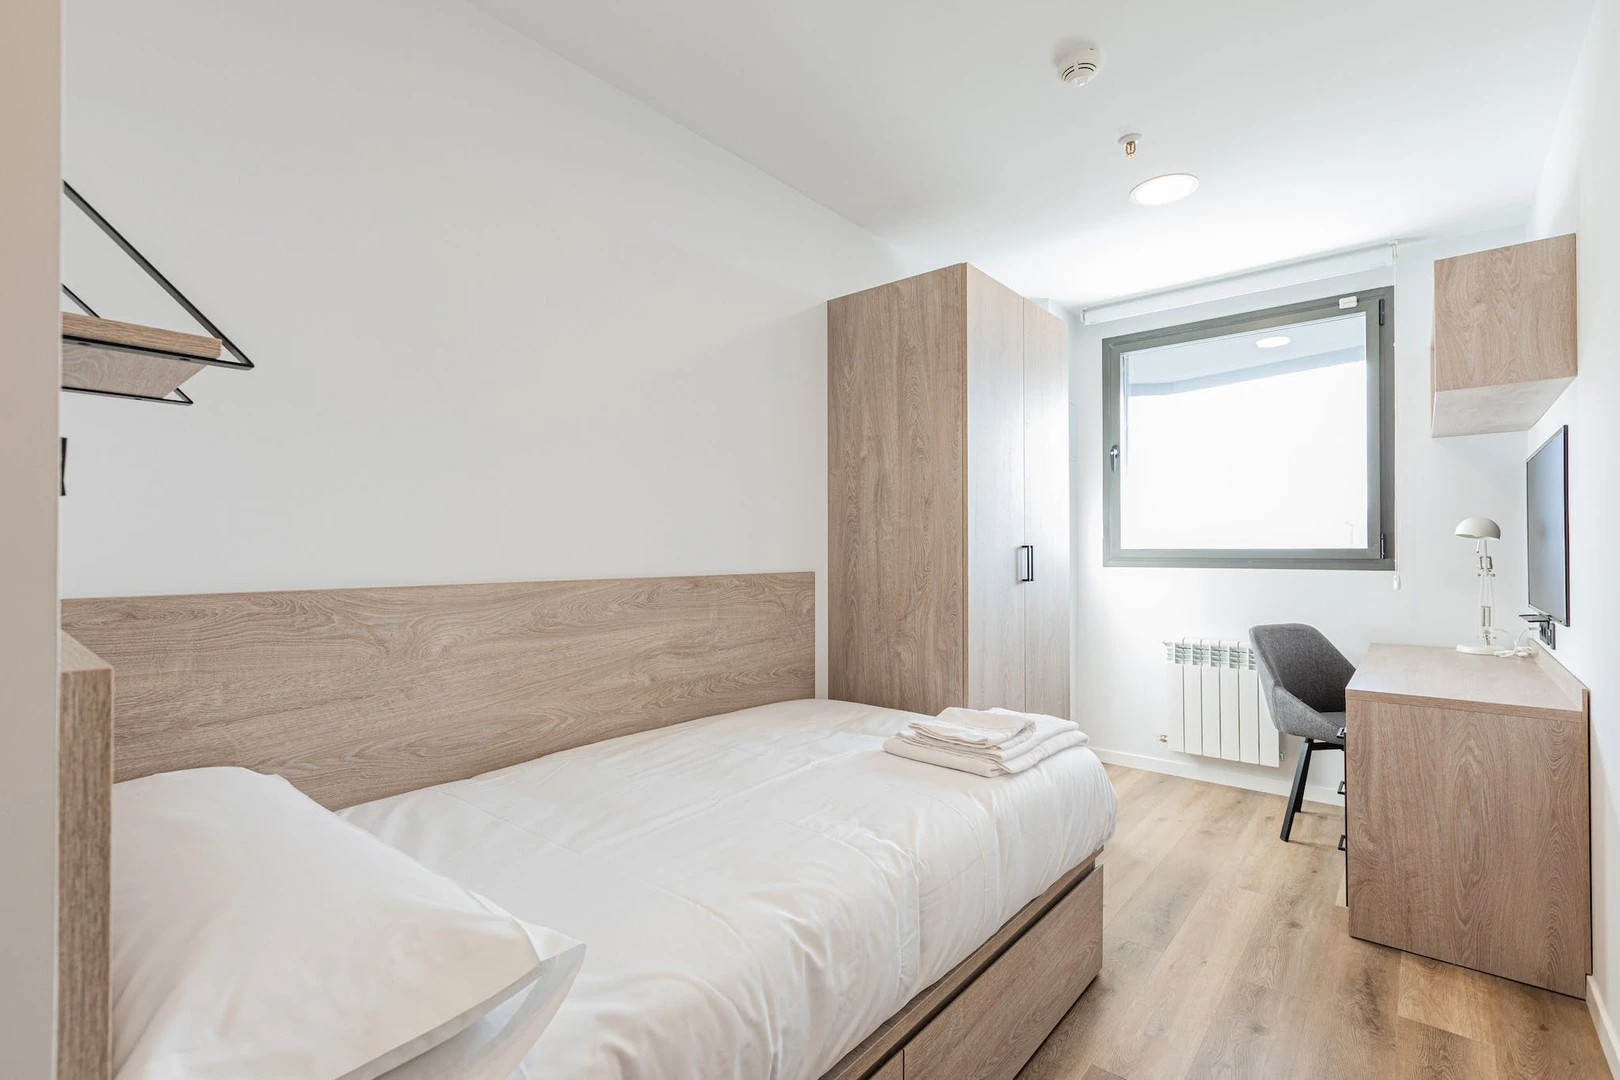 Santander de çift kişilik yataklı kiralık oda